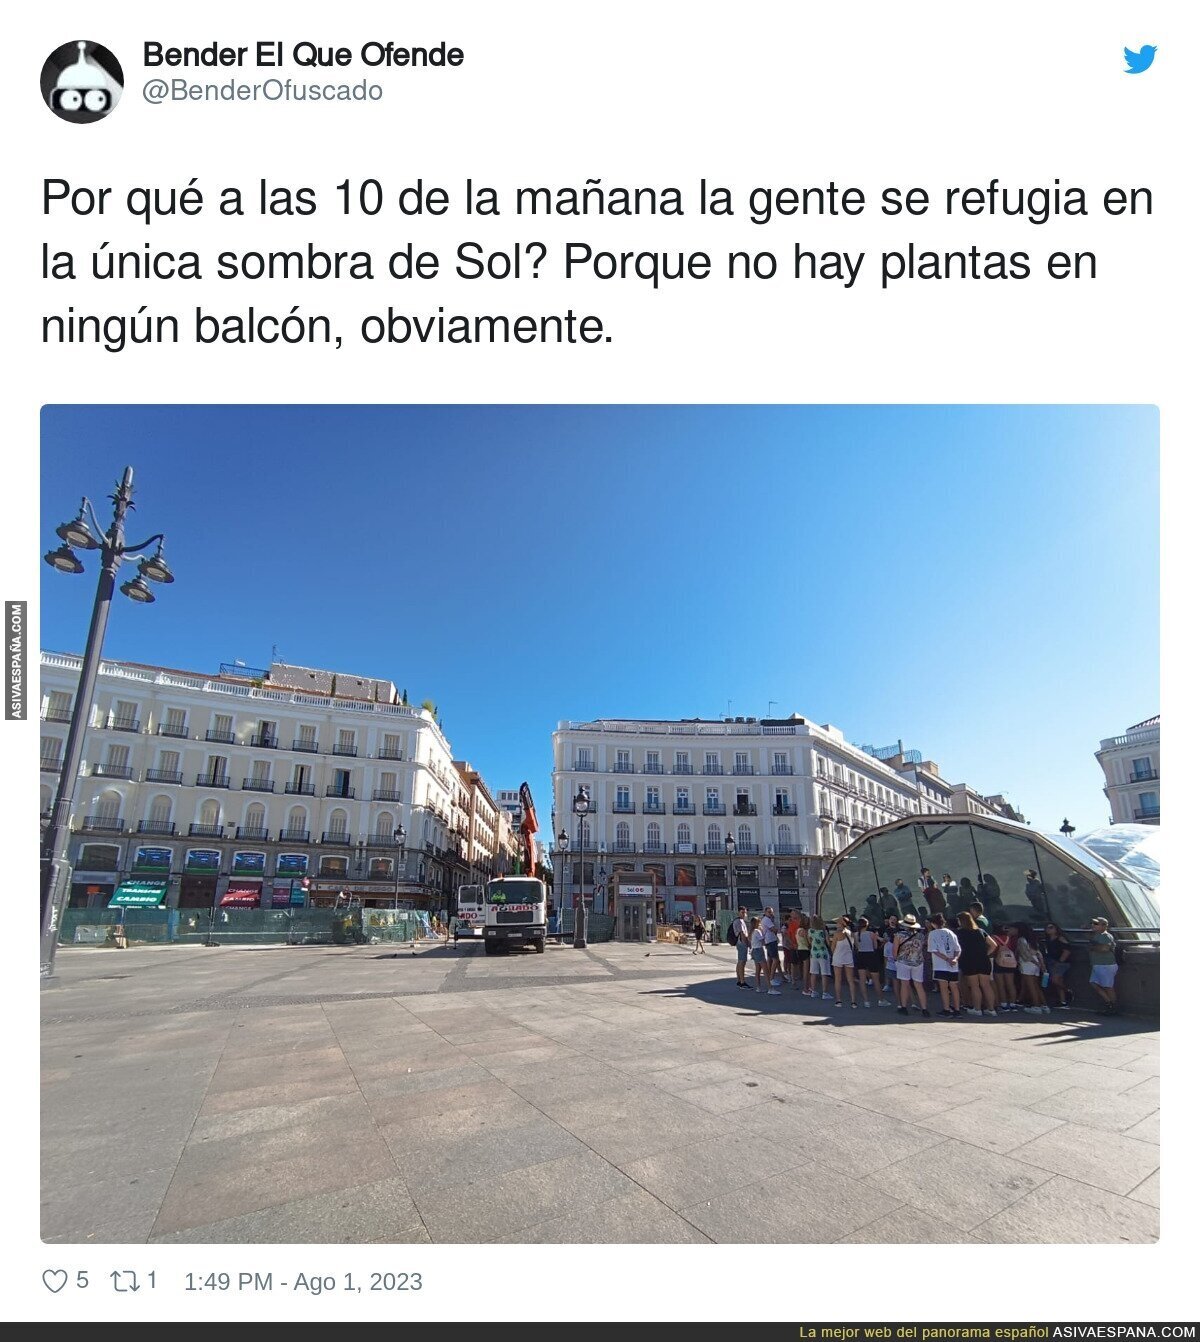 El gran problema de Madrid en verano